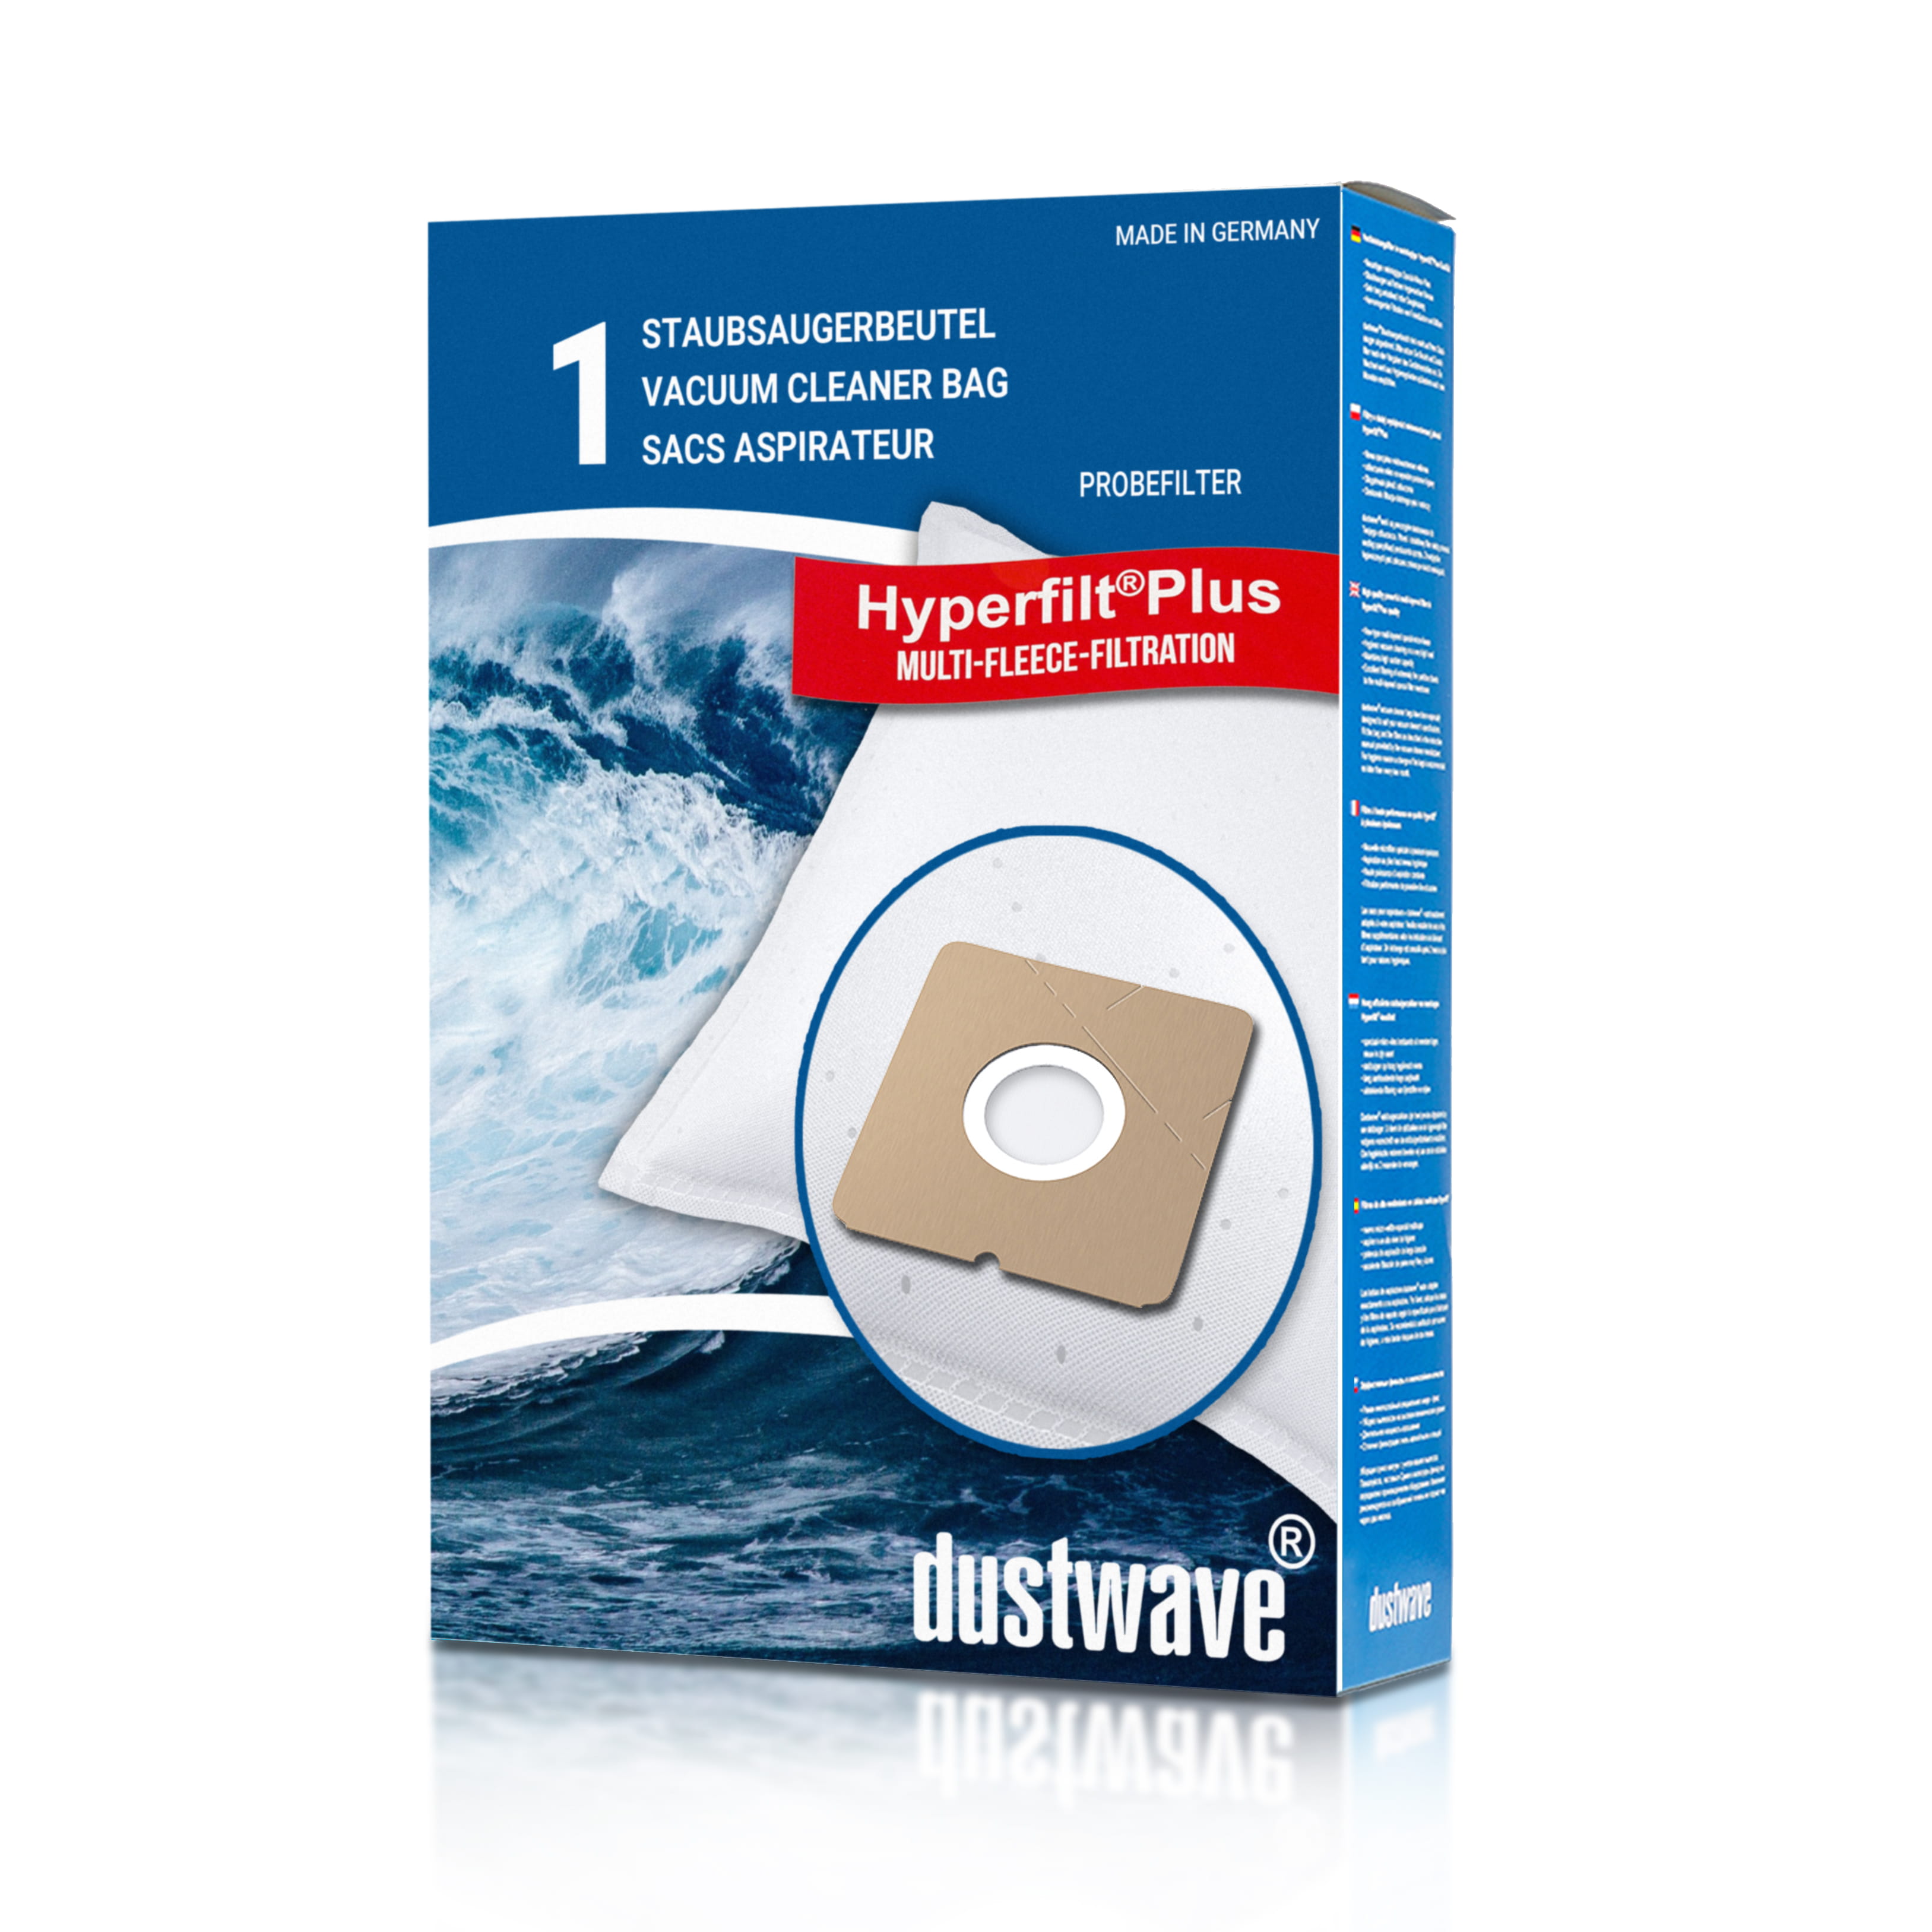 Dustwave® 1 Staubsaugerbeutel für AFK PS 1800 W.22NE - hocheffizient mit Hygieneverschluss - Made in Germany